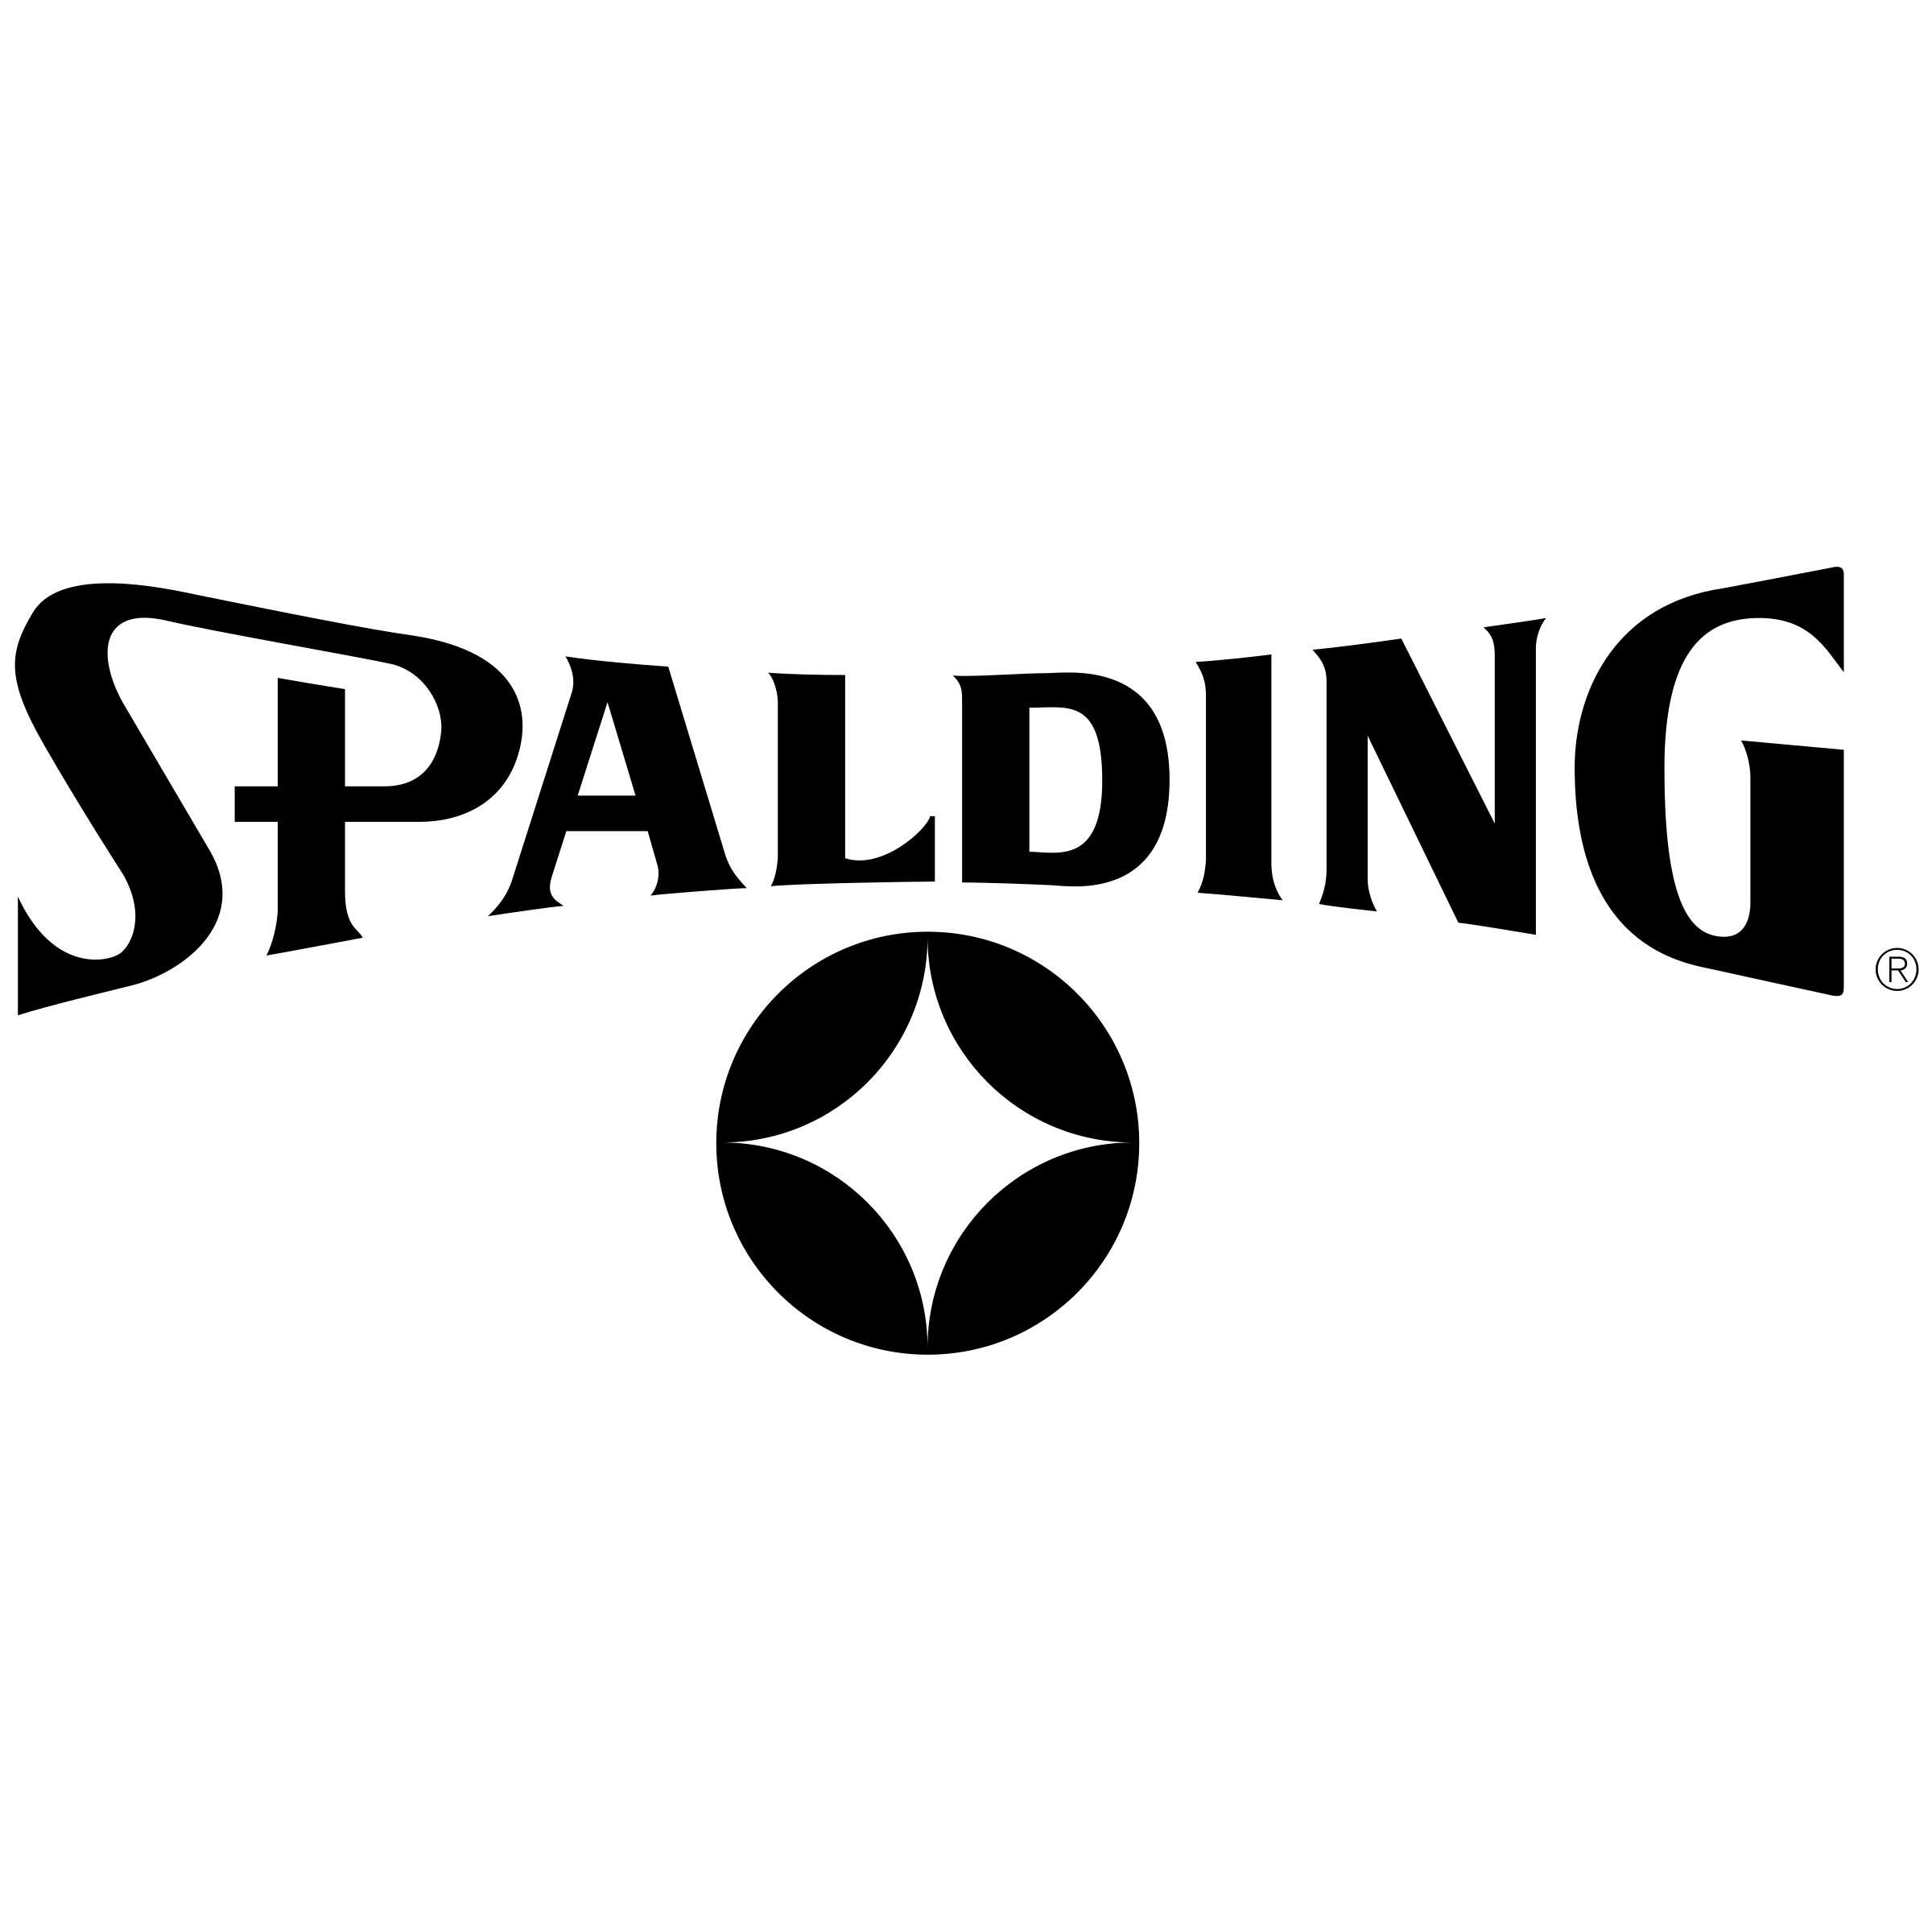 Spalding Logo - Spalding Logo PNG Transparent & SVG Vector - Freebie Supply